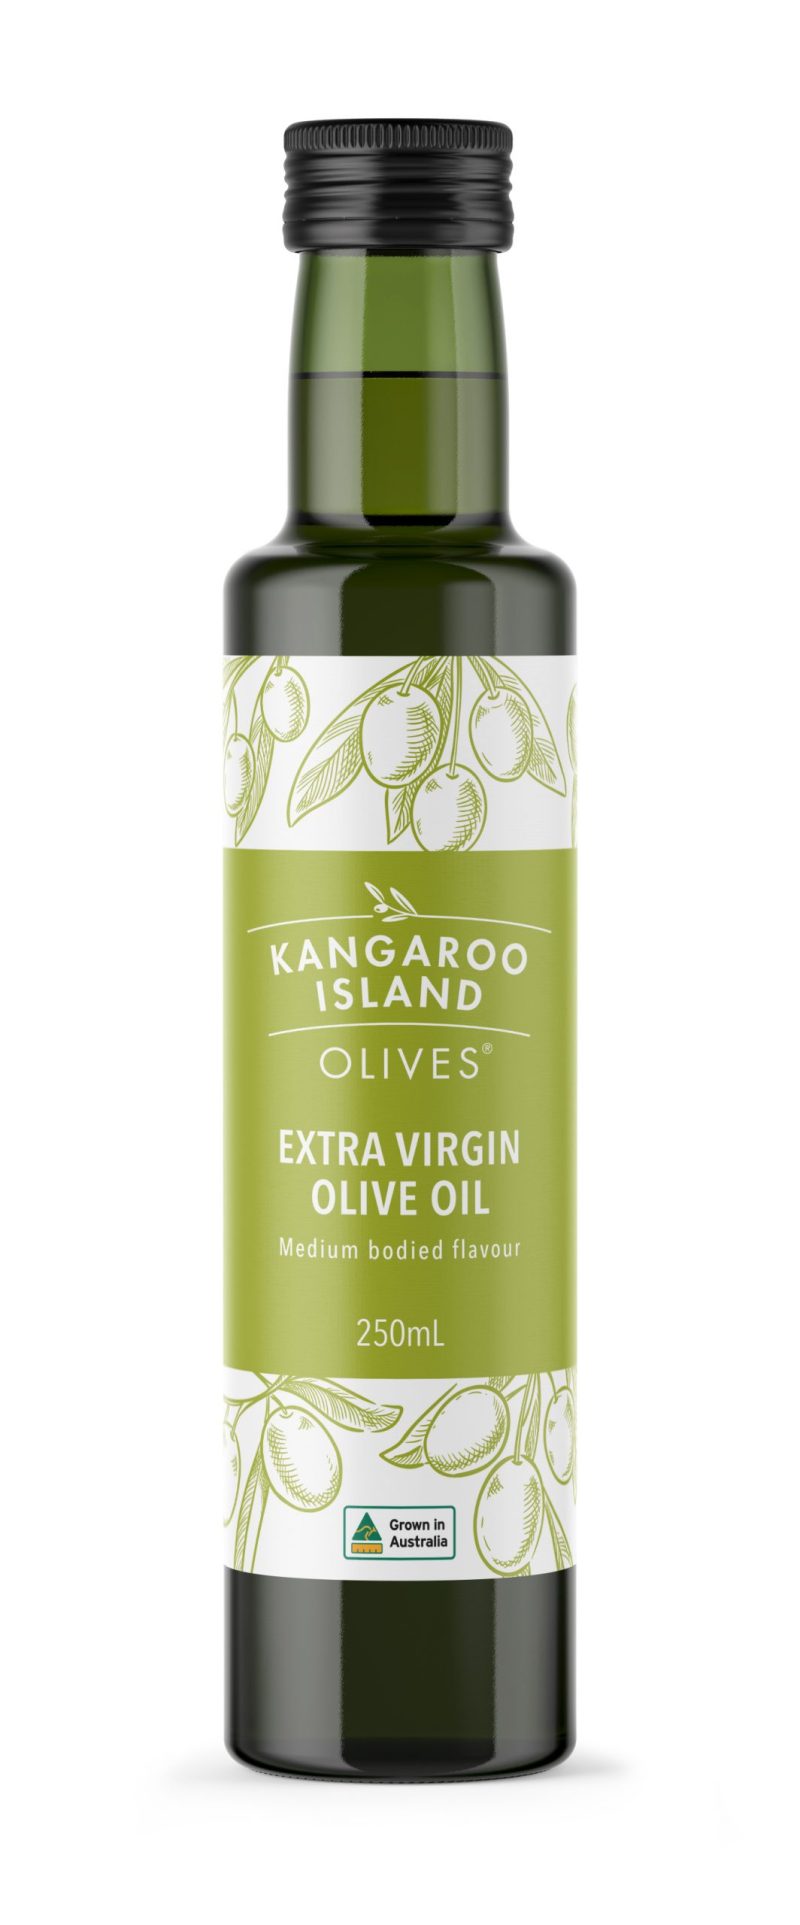 Kangaroo island olives little liguria extra virgin olive oil table olives